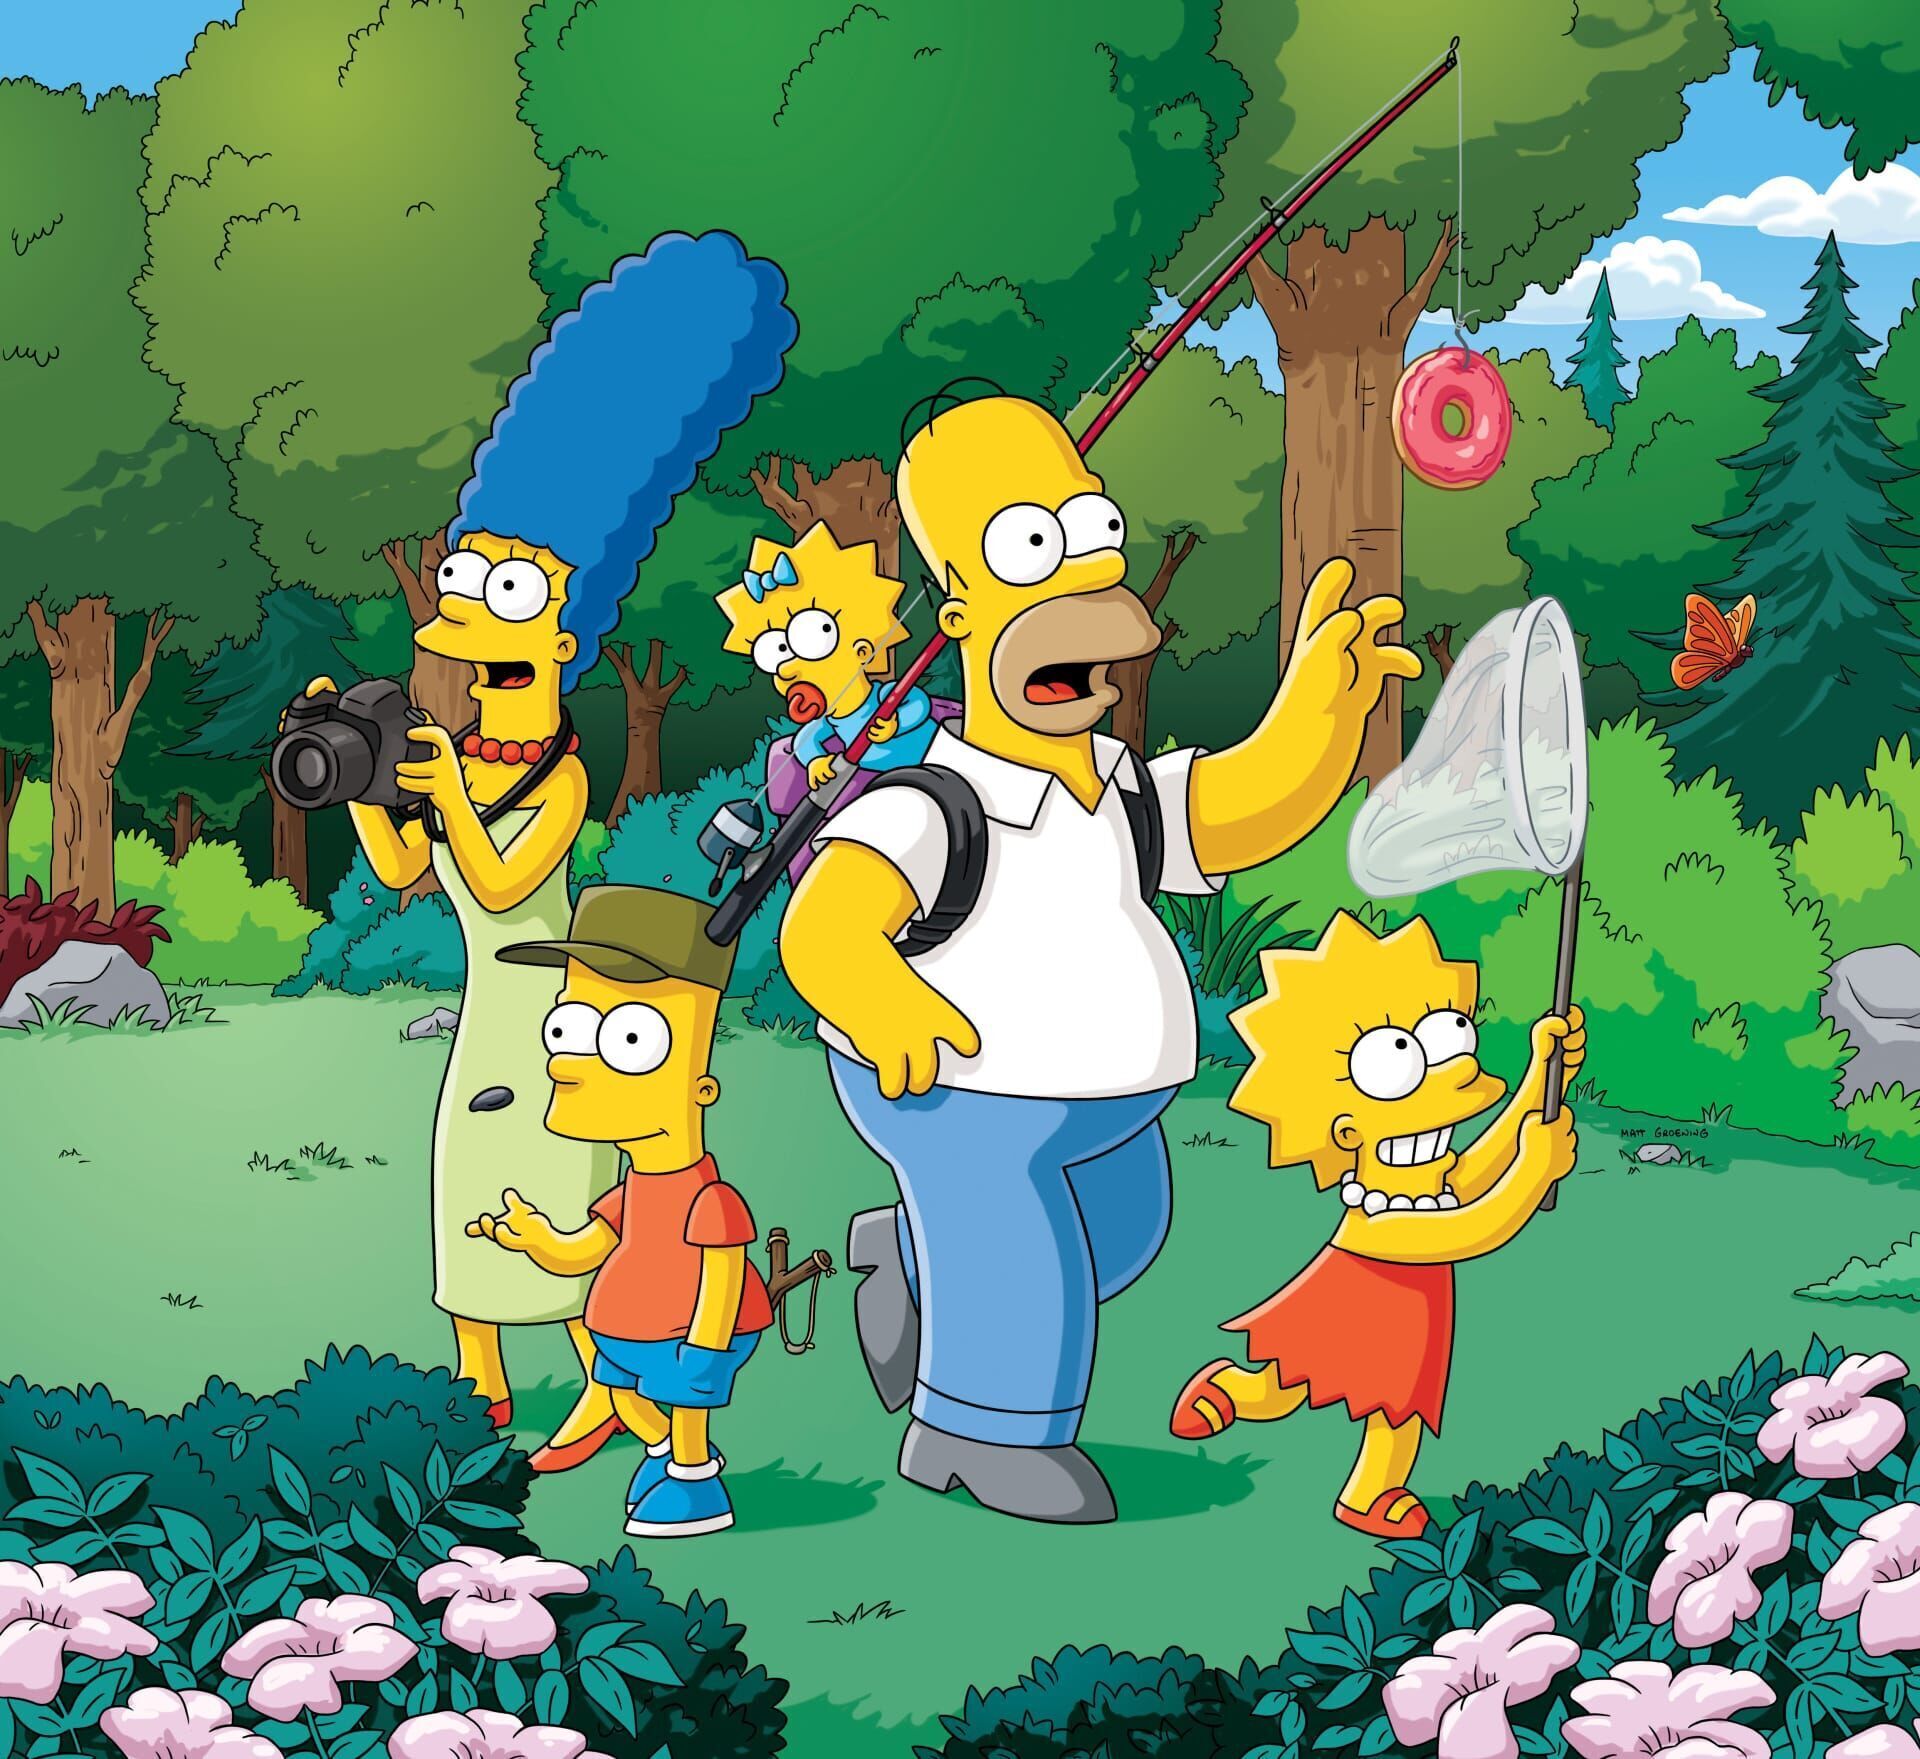 The Simpsons - A Nightmare on Elm Street